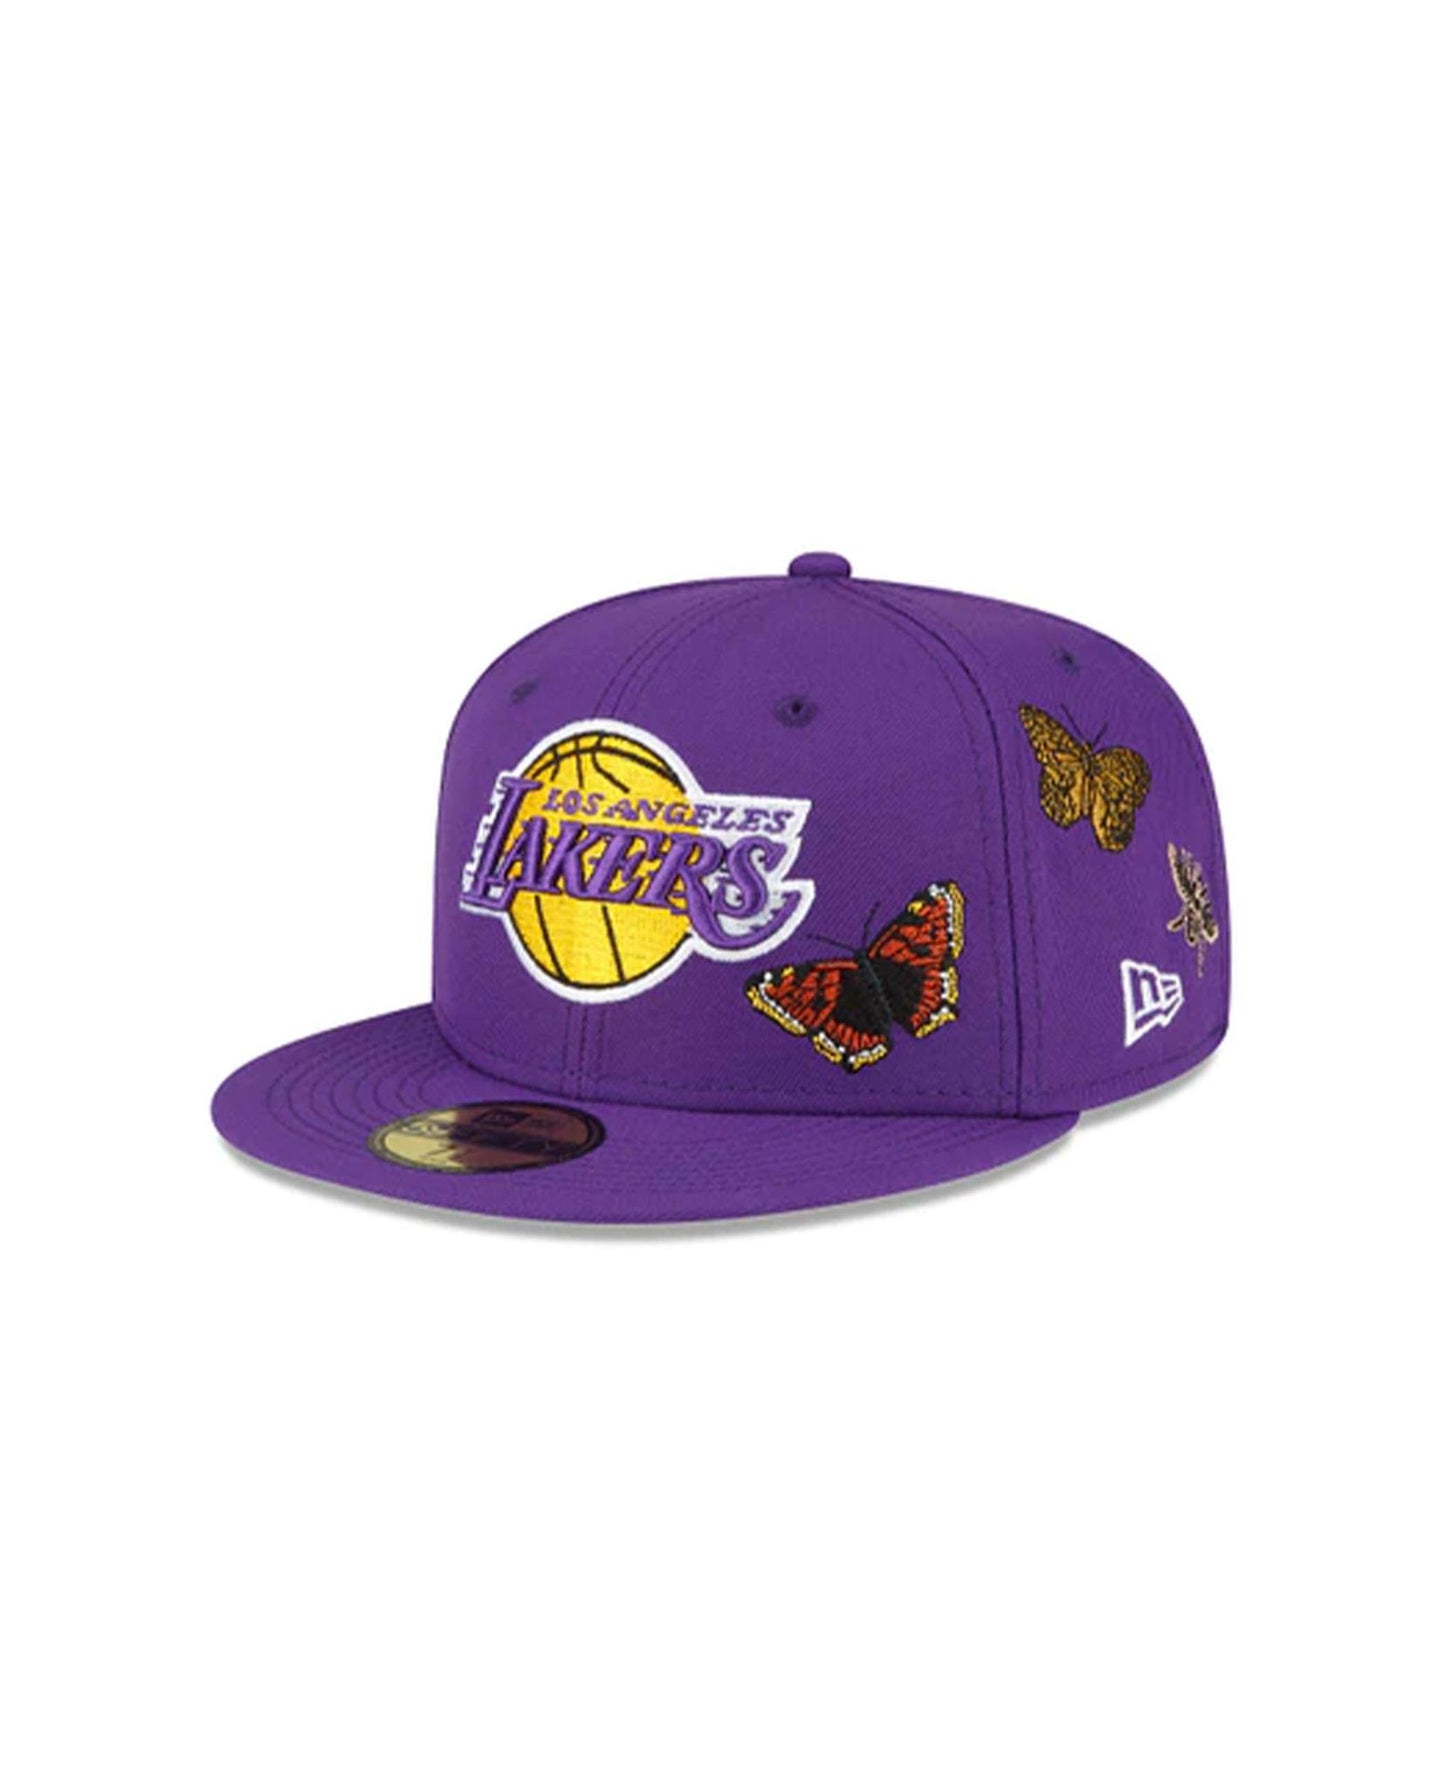 New Era, Accessories, New Era Los Angeles Lakers Cap